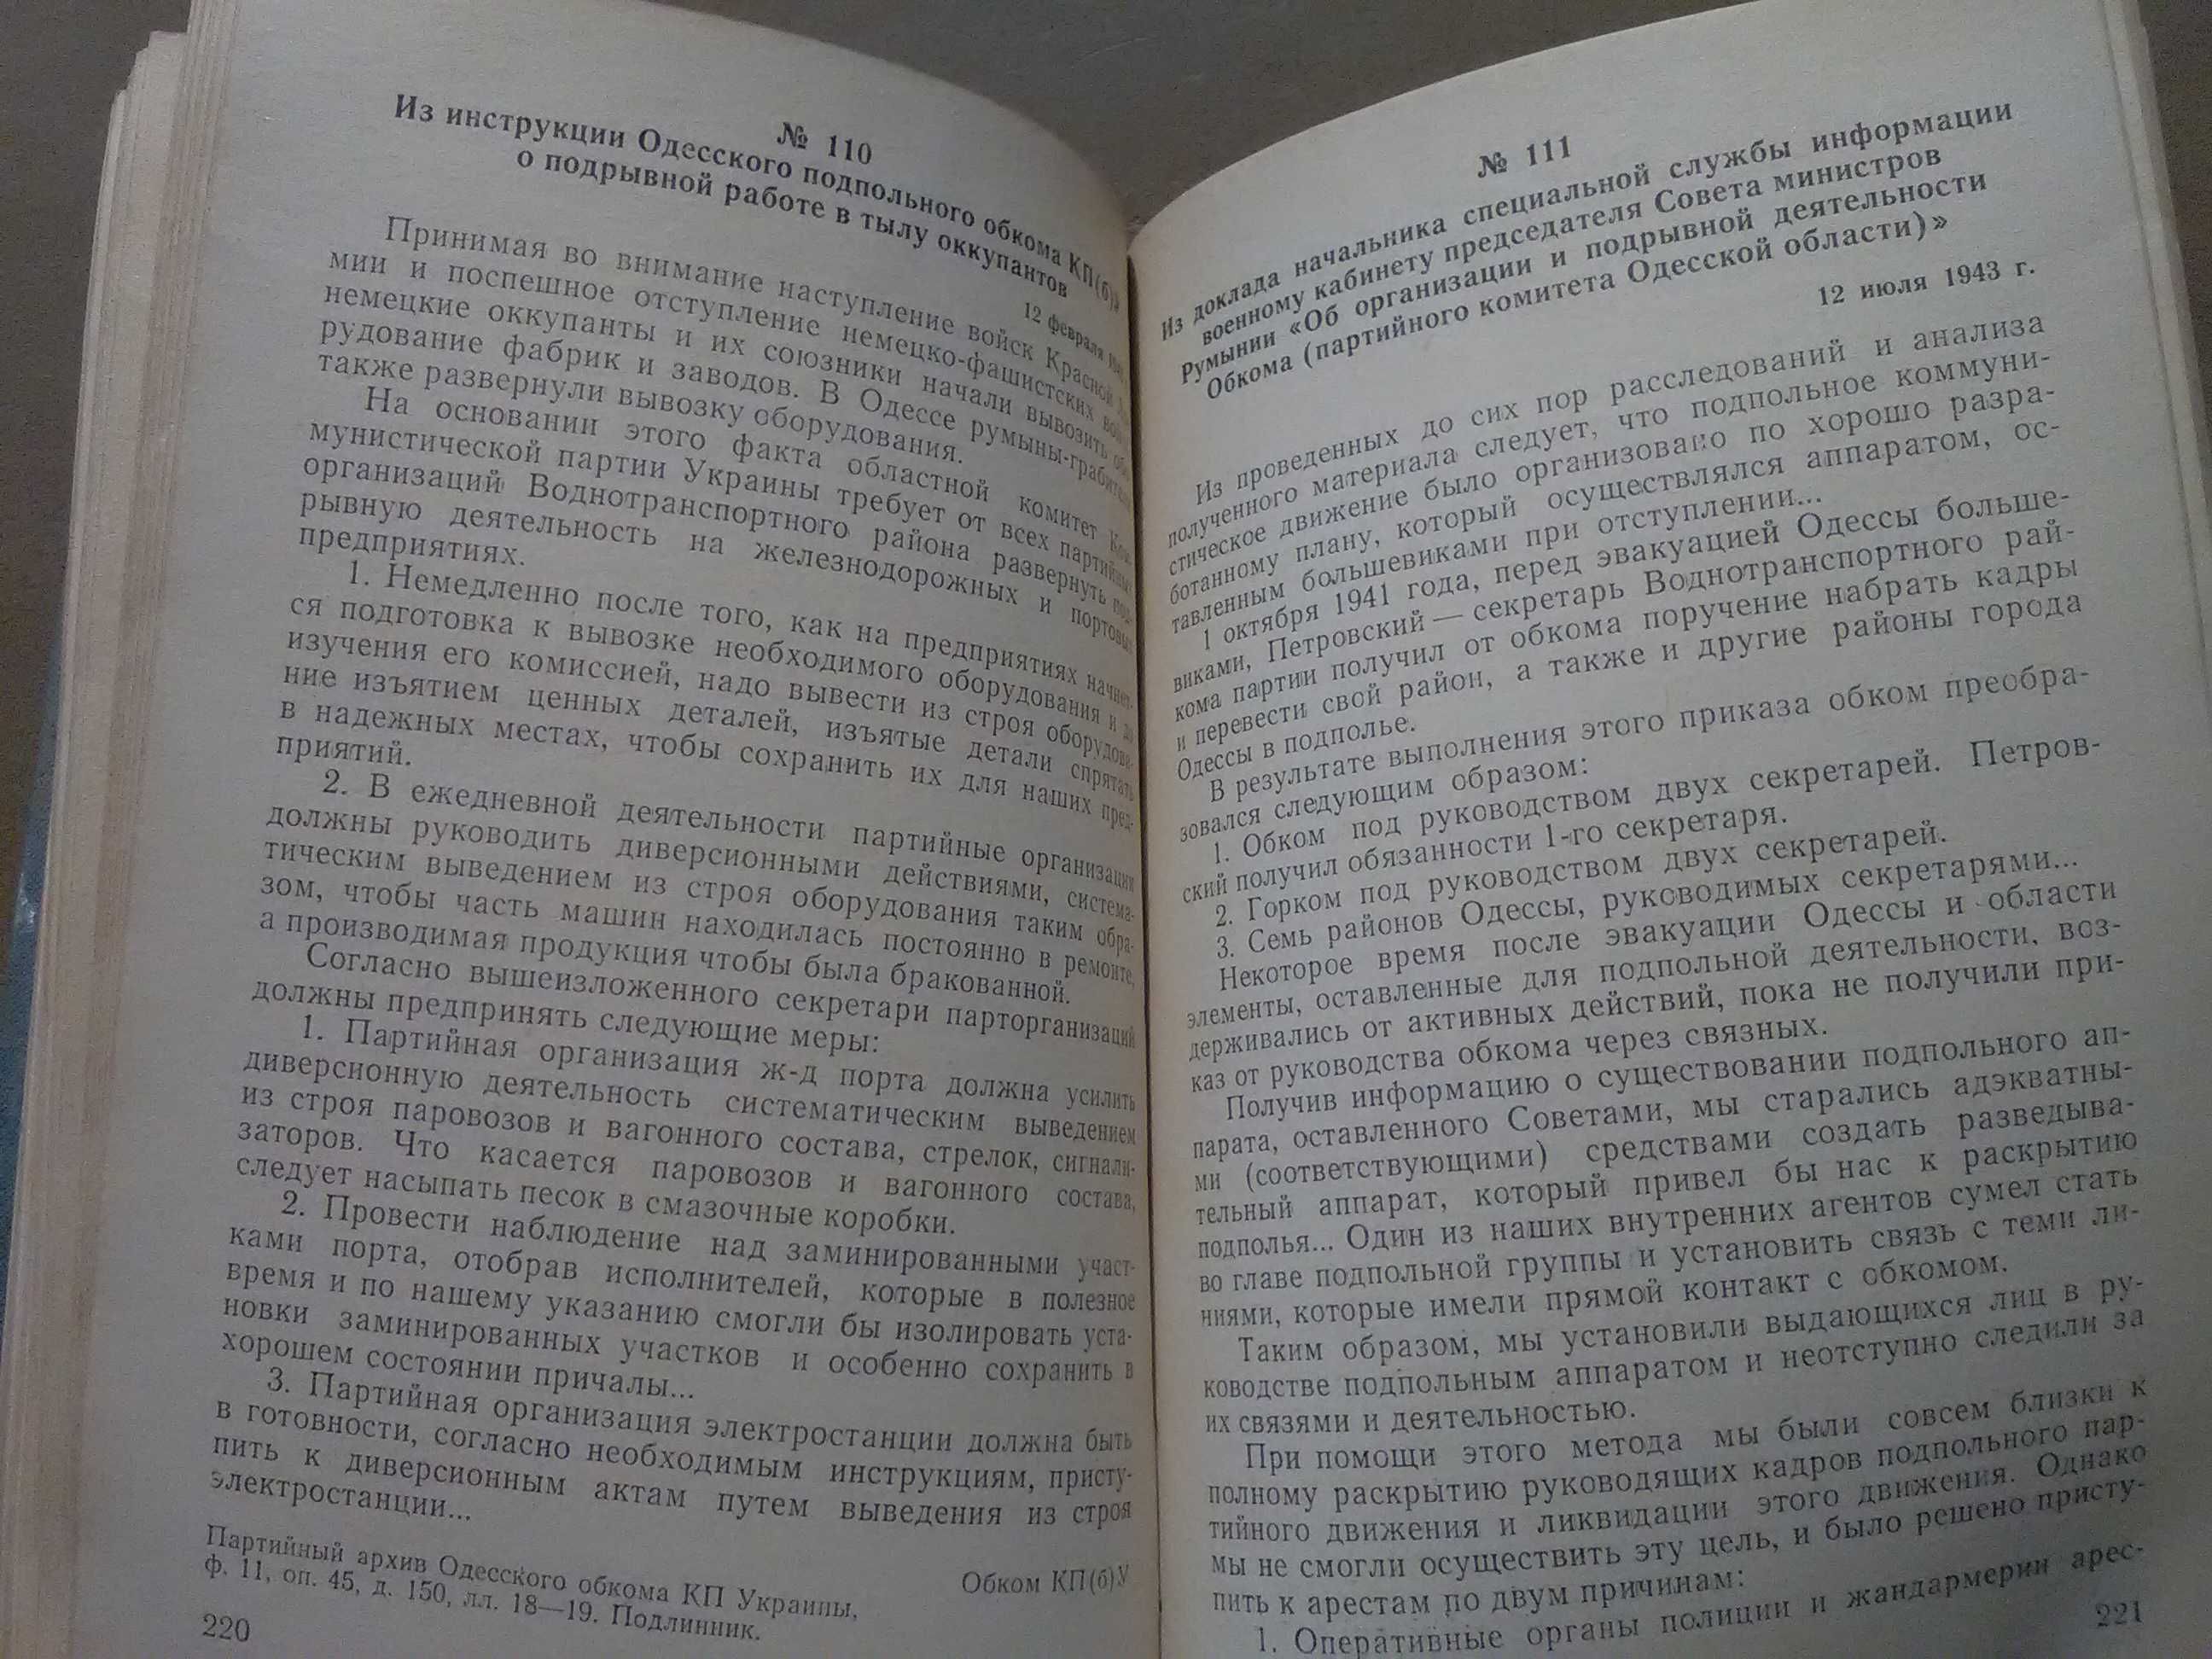 Одесская обл. в Великой Отечественной 41-45 гг. Документы, материалы.